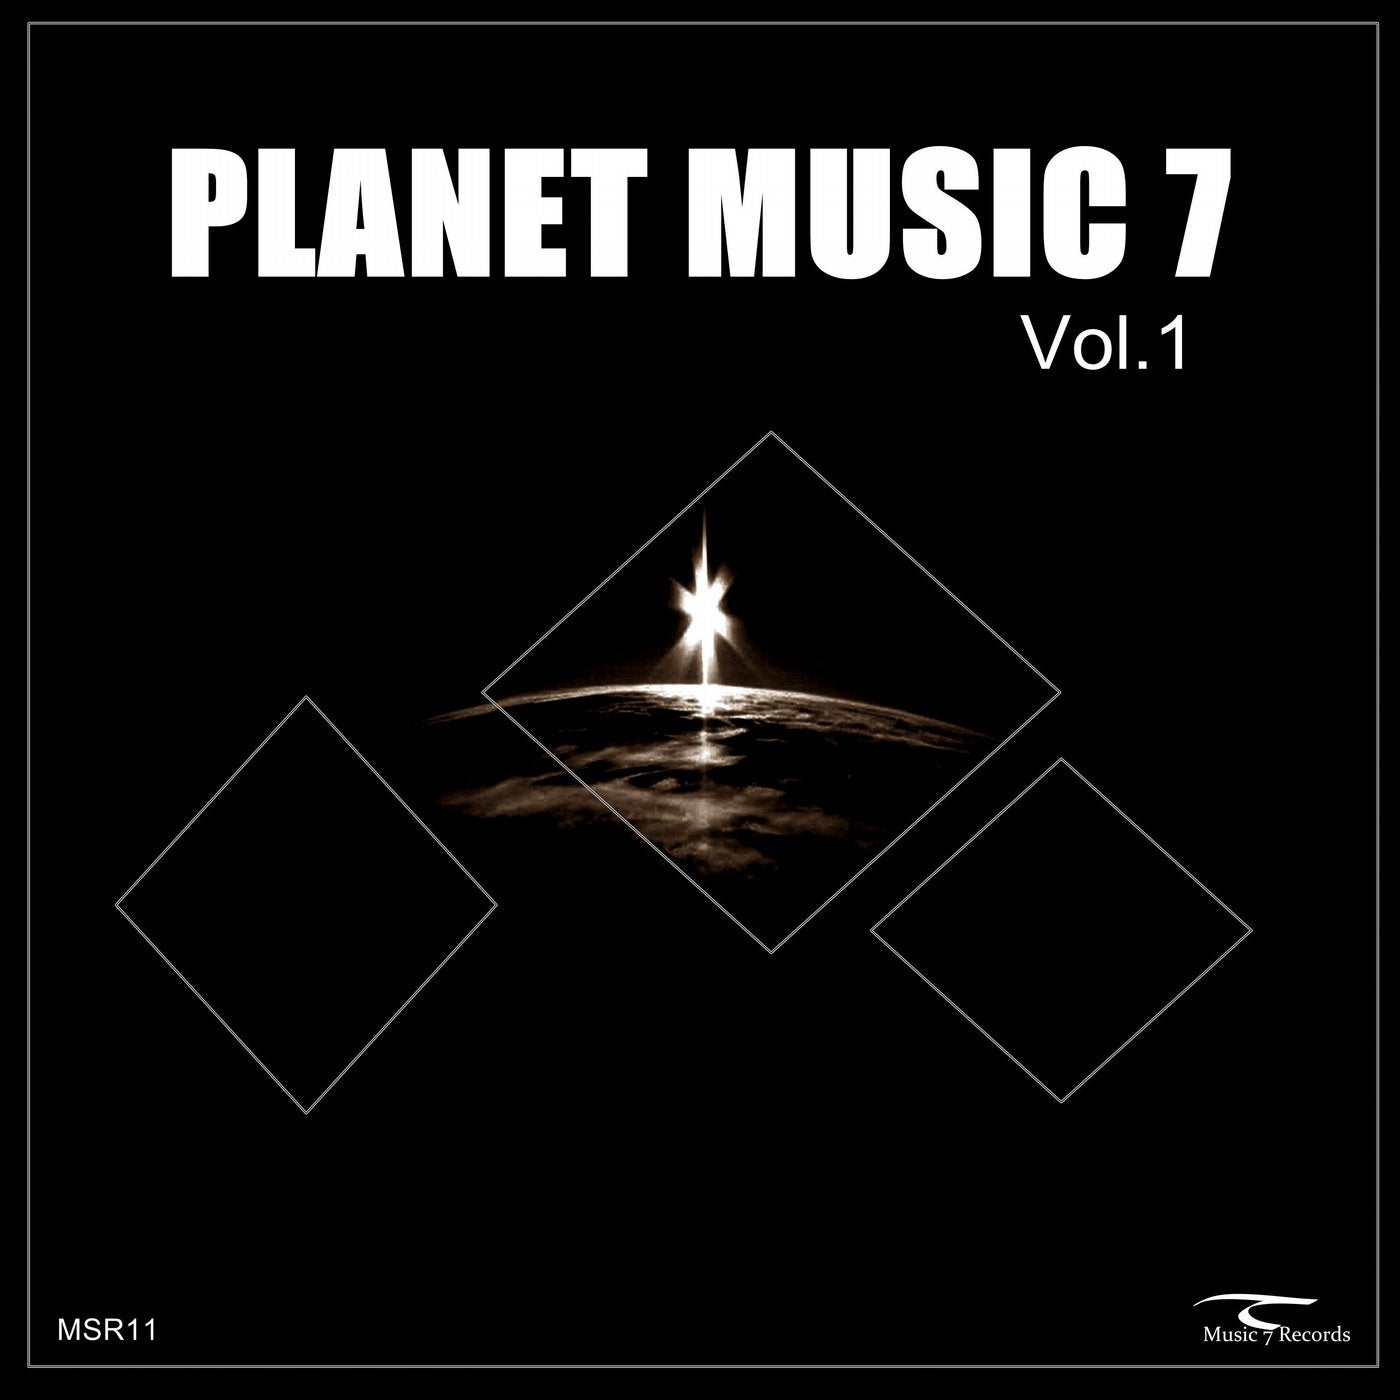 Planet Music 7 Vol.1